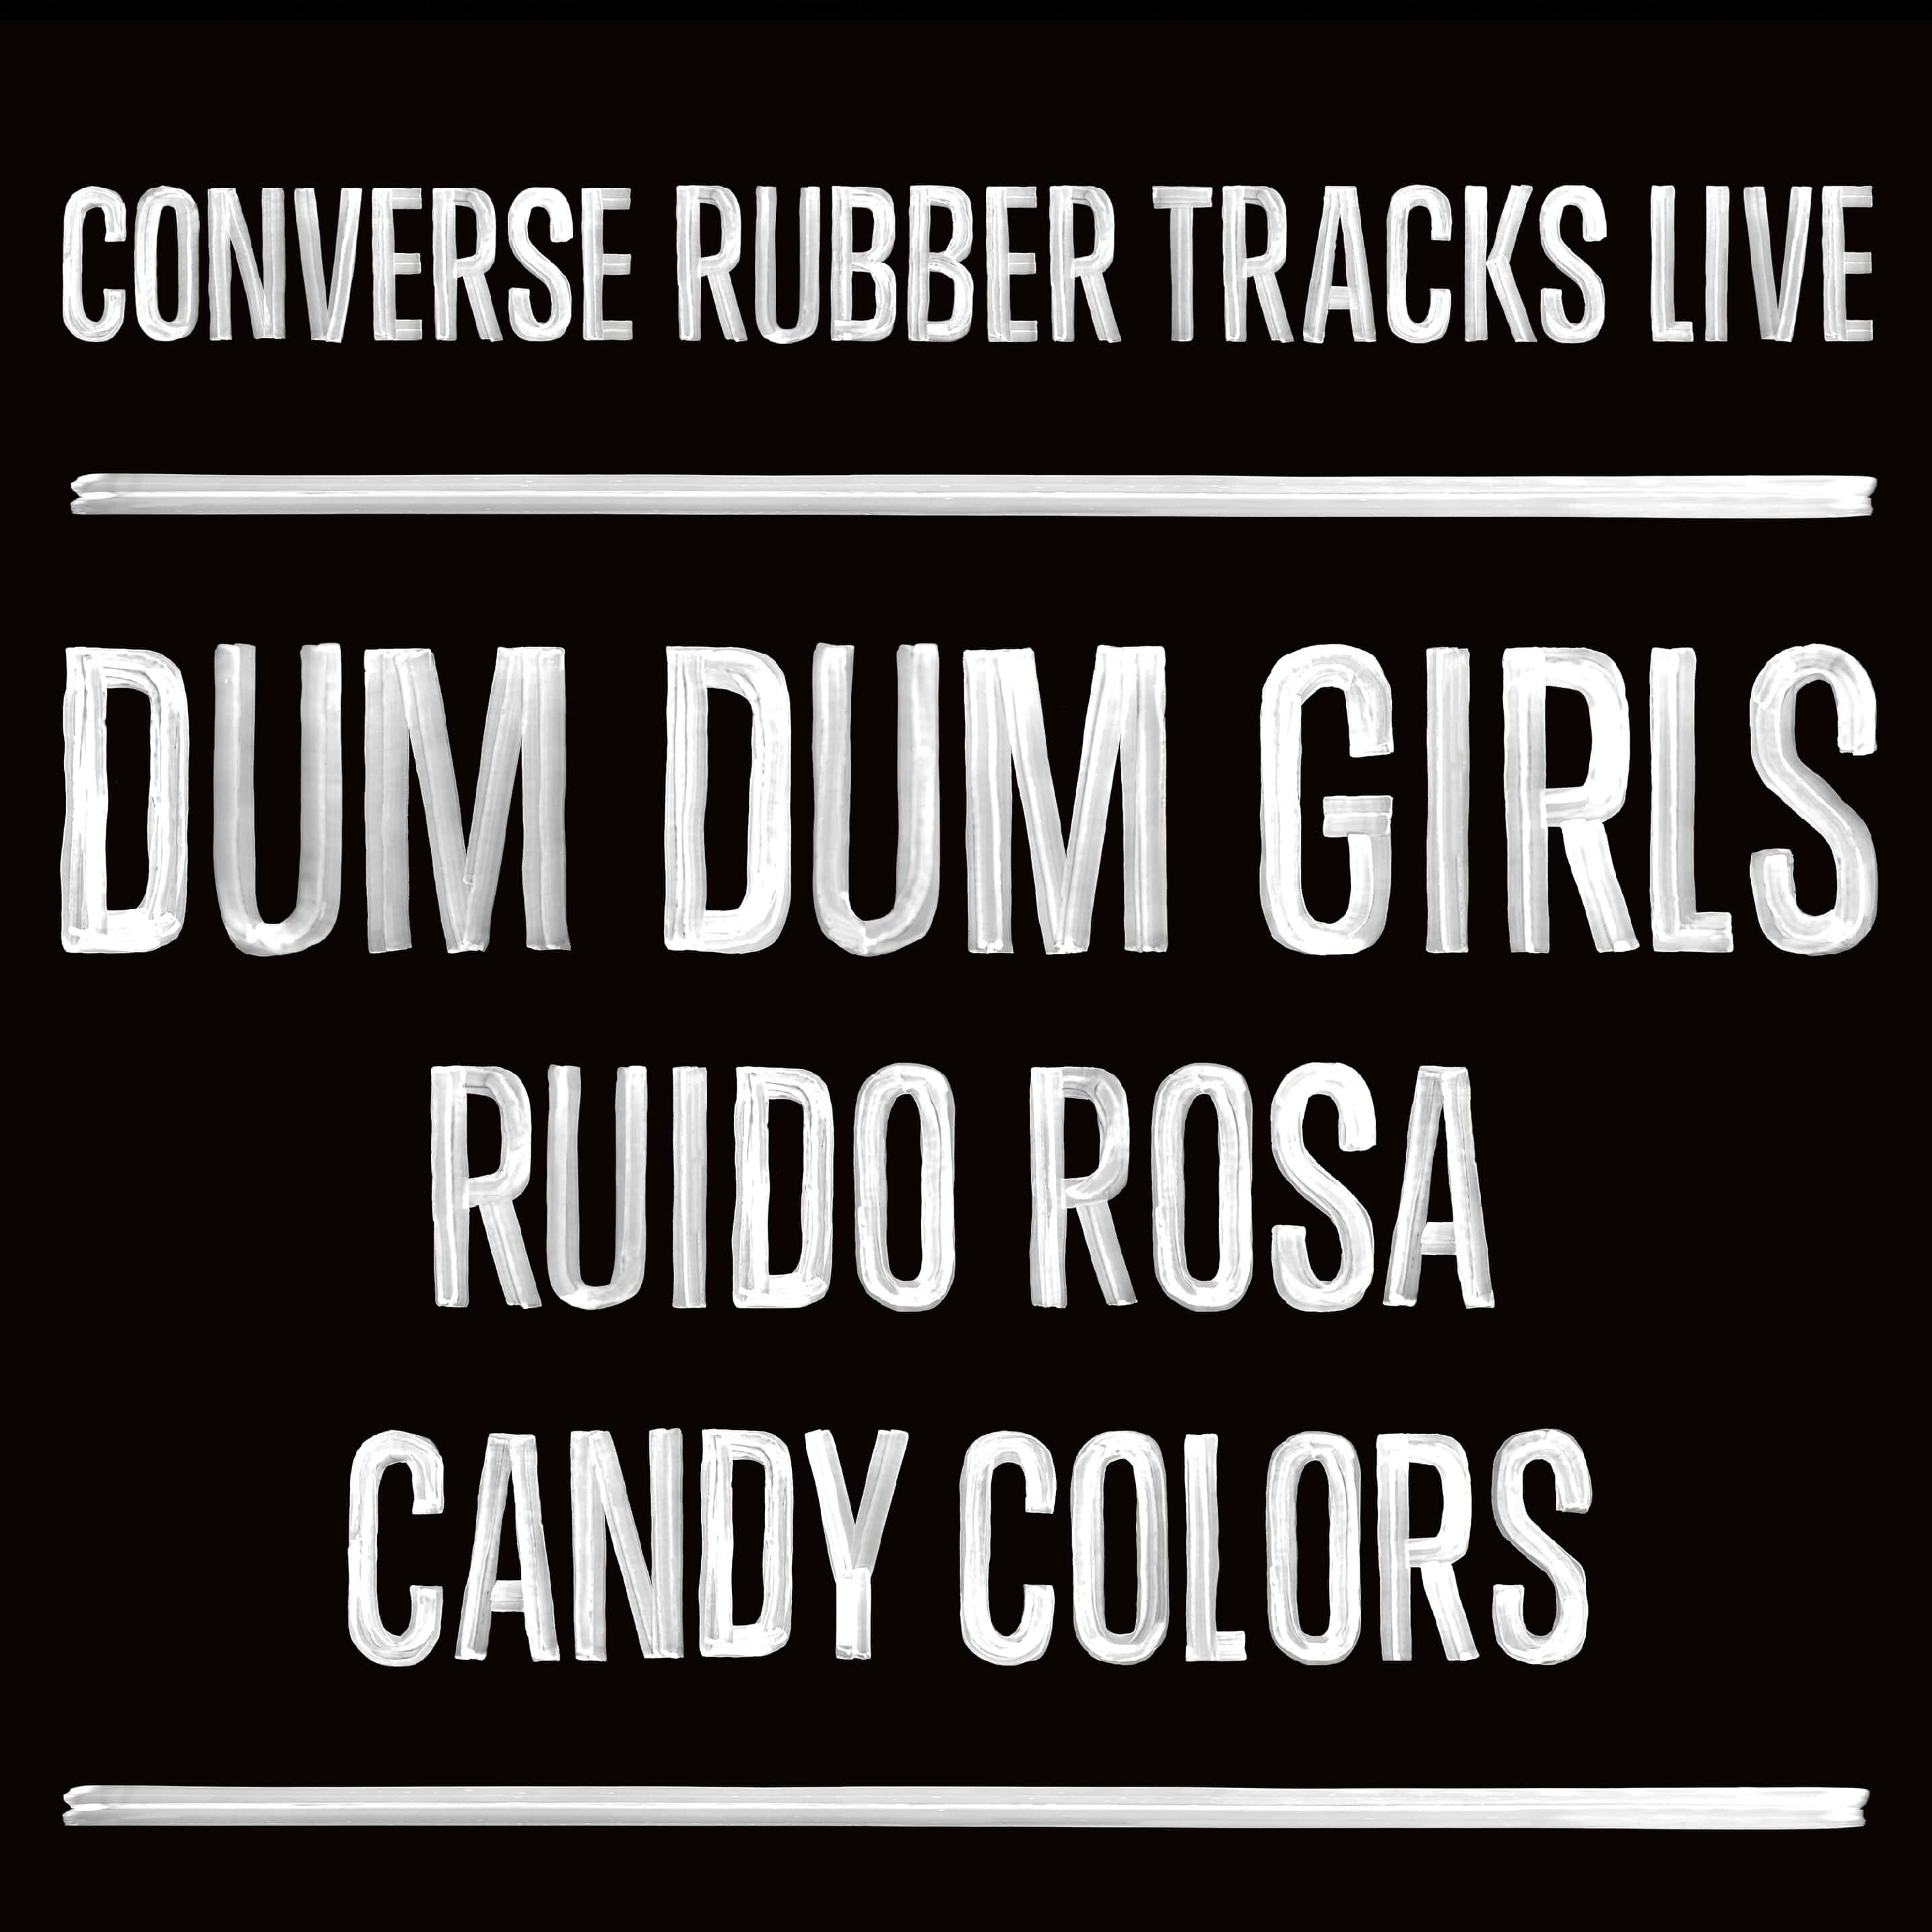 ¡Boletos para Dum Dum Girls! #RubberTracksLive